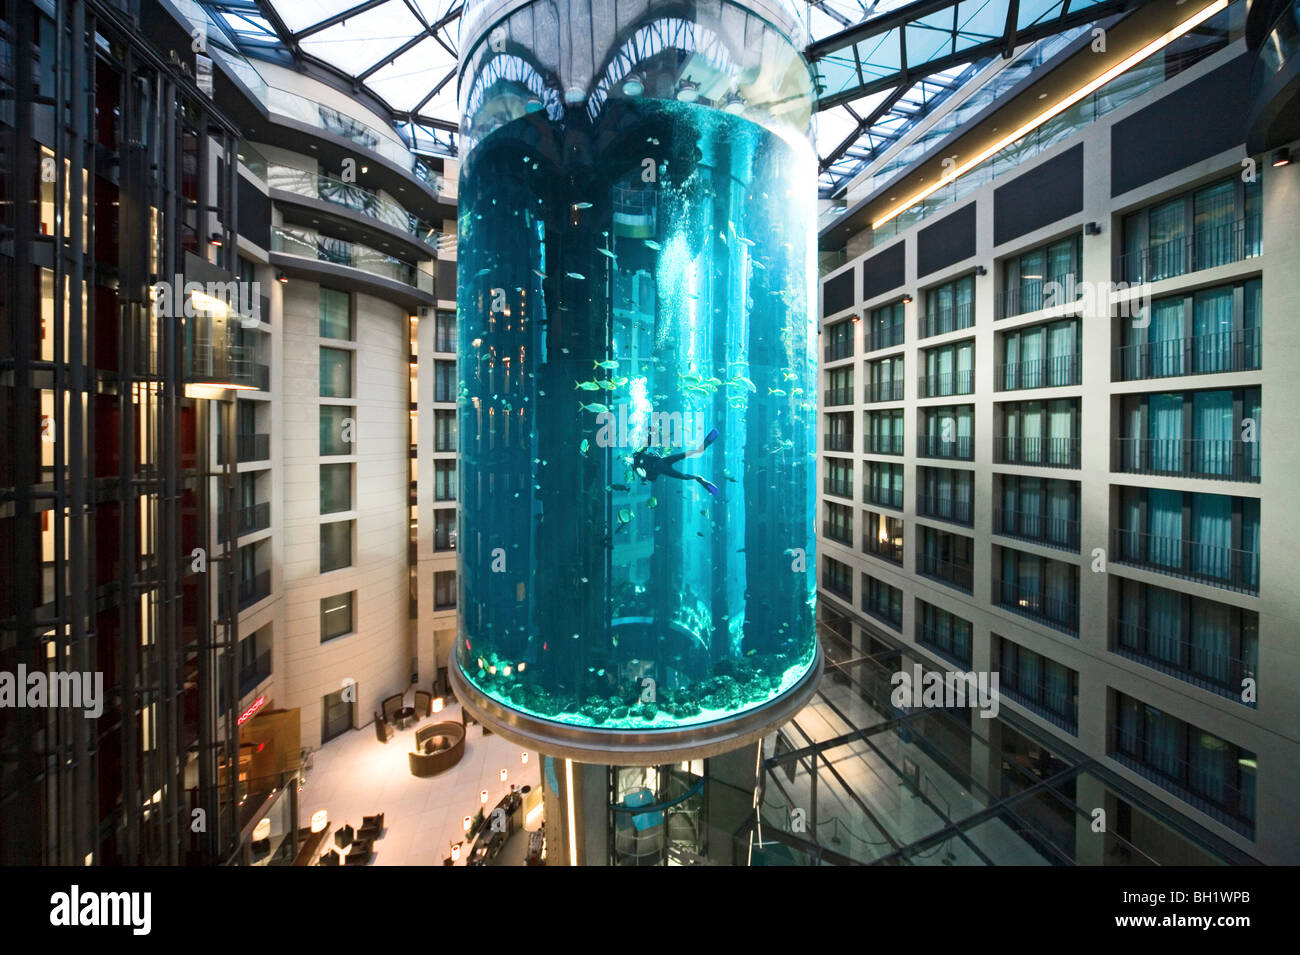 El hotel de 5 estrellas Radisson SAS Hotel alberga el acuario cilíndrico más grande del mundo. entrada de Aqua Dom, un buzo se limpia el depósito, Foto de stock